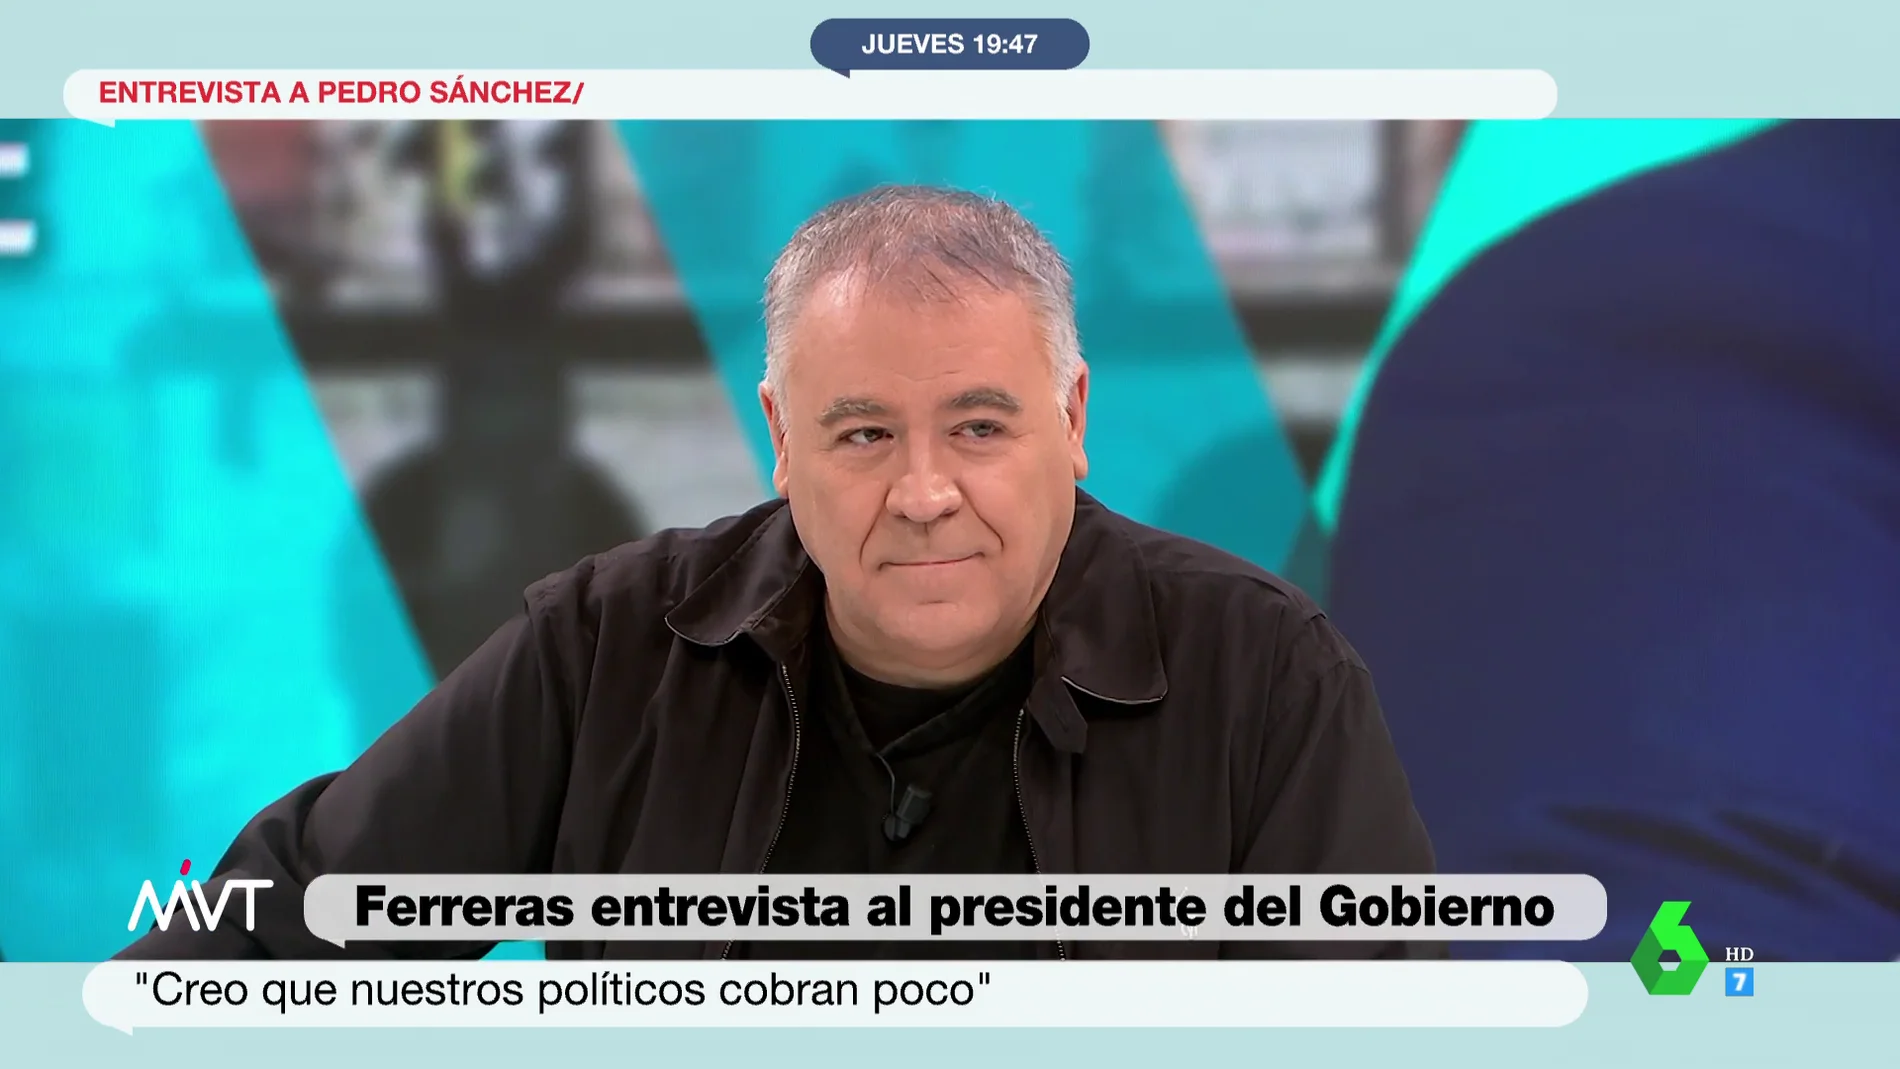 La reflexión de Ferreras sobre el sueldo de los políticos en España: "Creo que cobran poco"